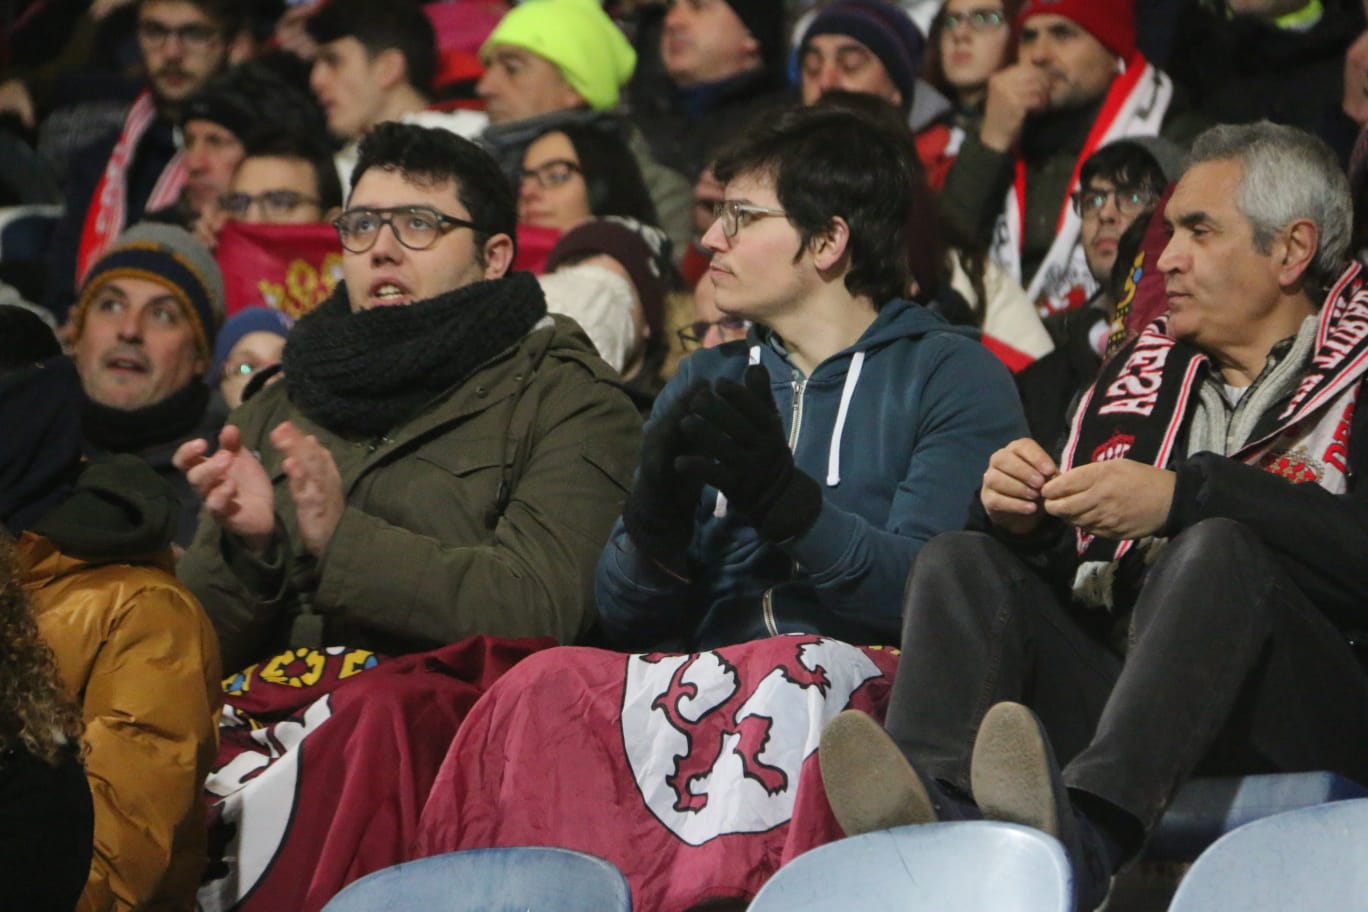 El Reino de León se llena para ver el choque entre Cultural y Atlético de Madrid.